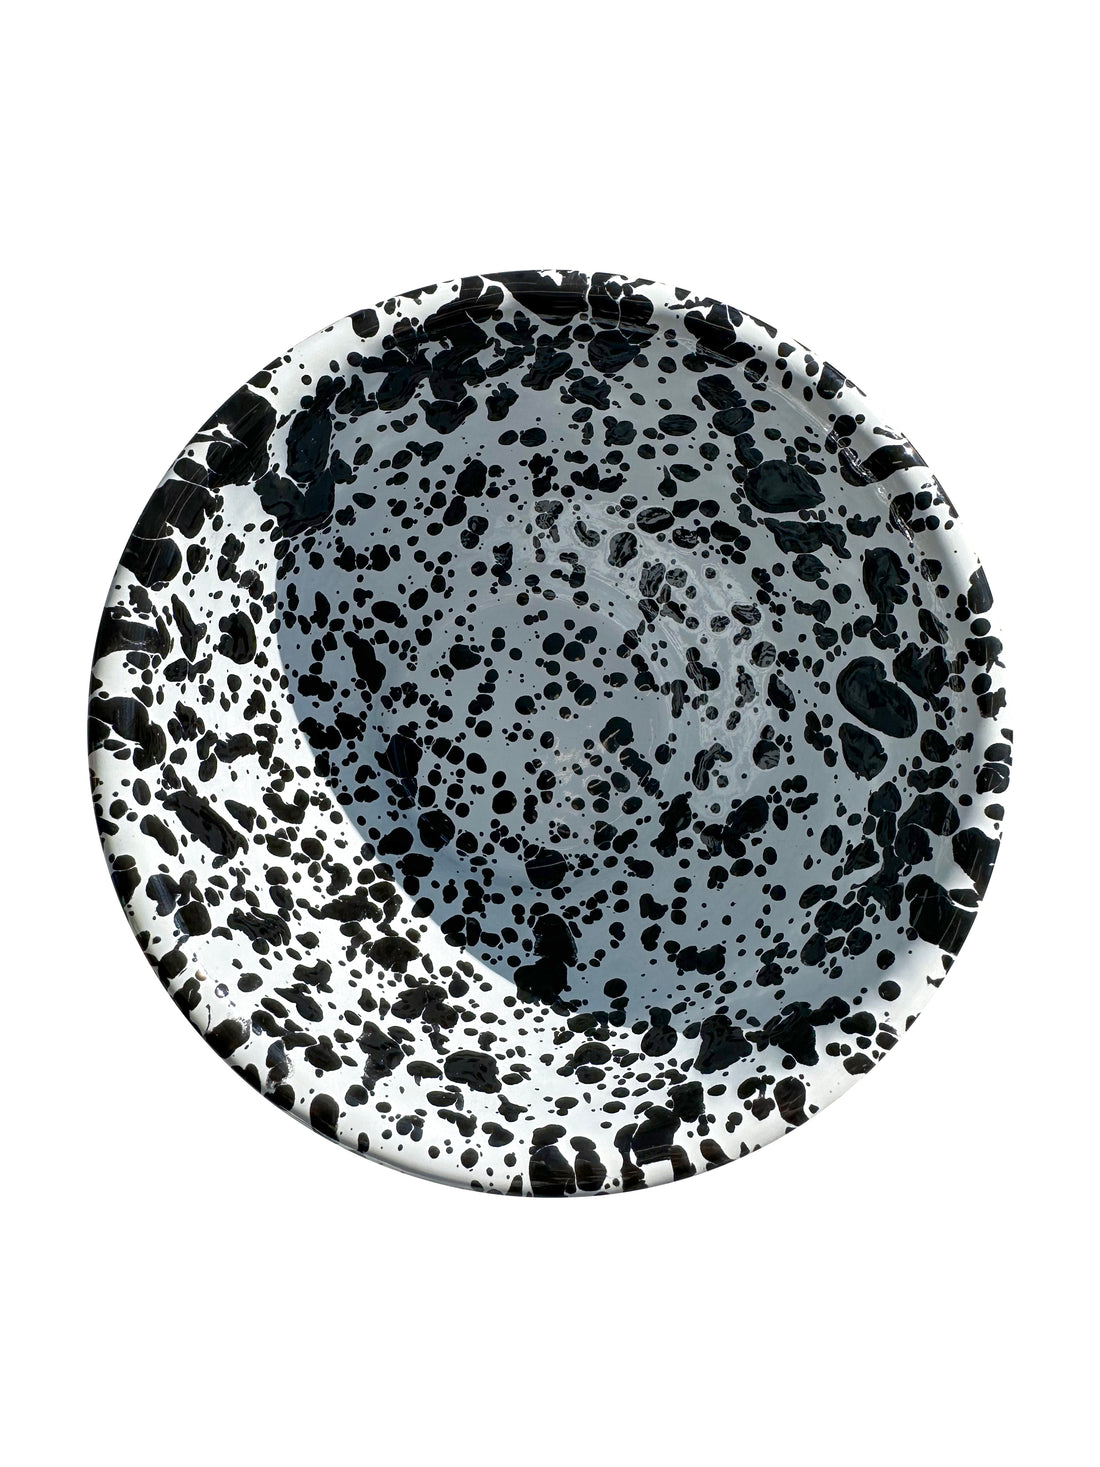 Speckled Enamelware